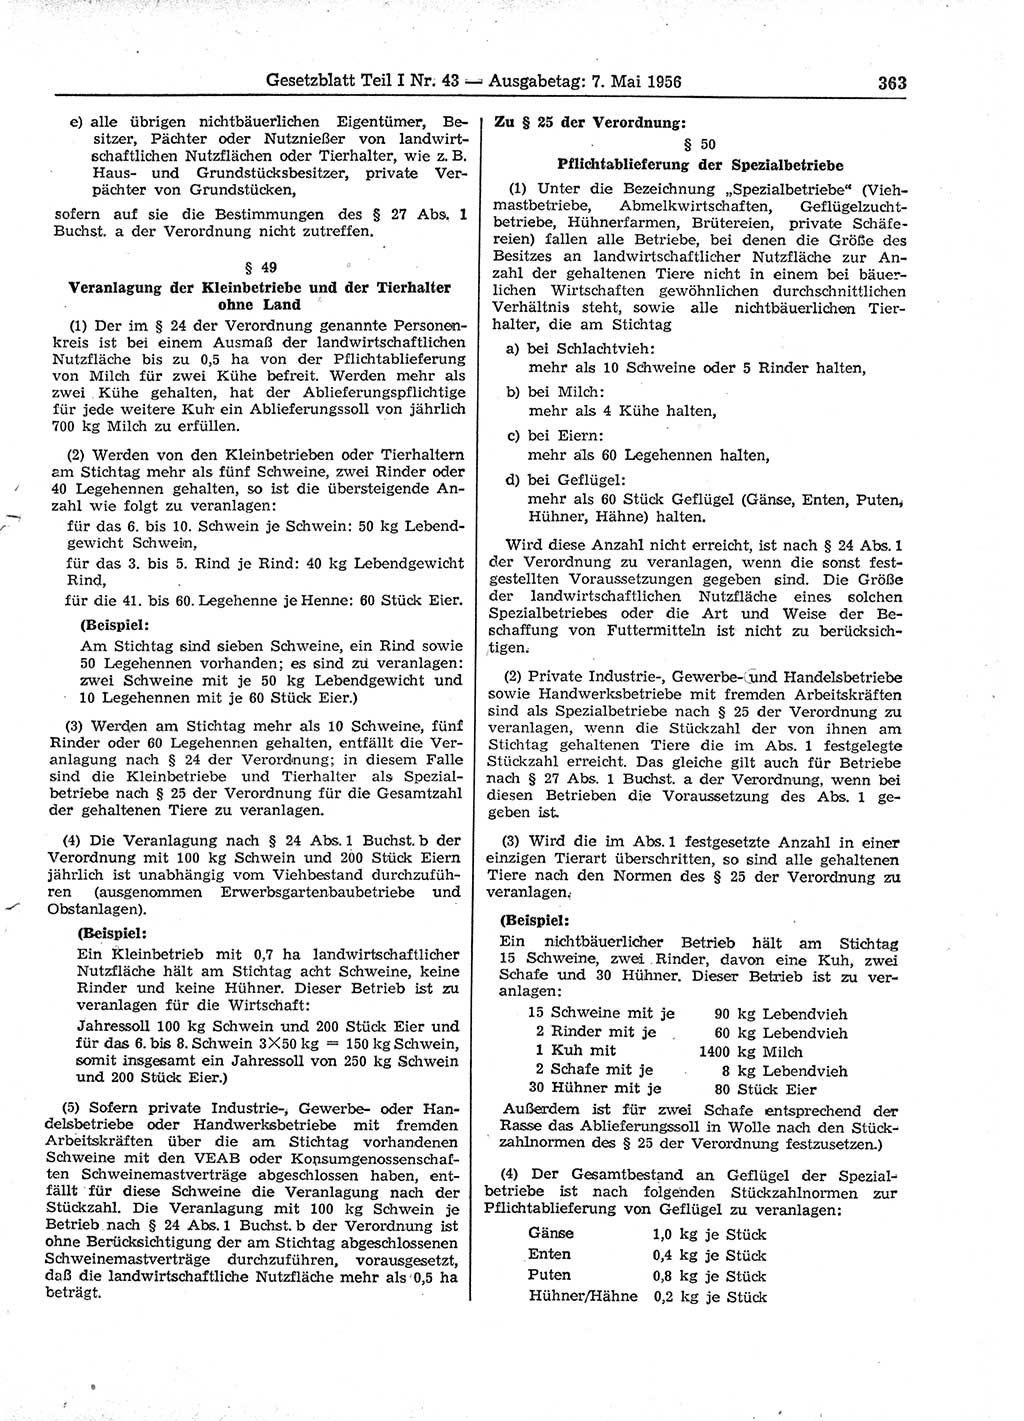 Gesetzblatt (GBl.) der Deutschen Demokratischen Republik (DDR) Teil Ⅰ 1956, Seite 363 (GBl. DDR Ⅰ 1956, S. 363)